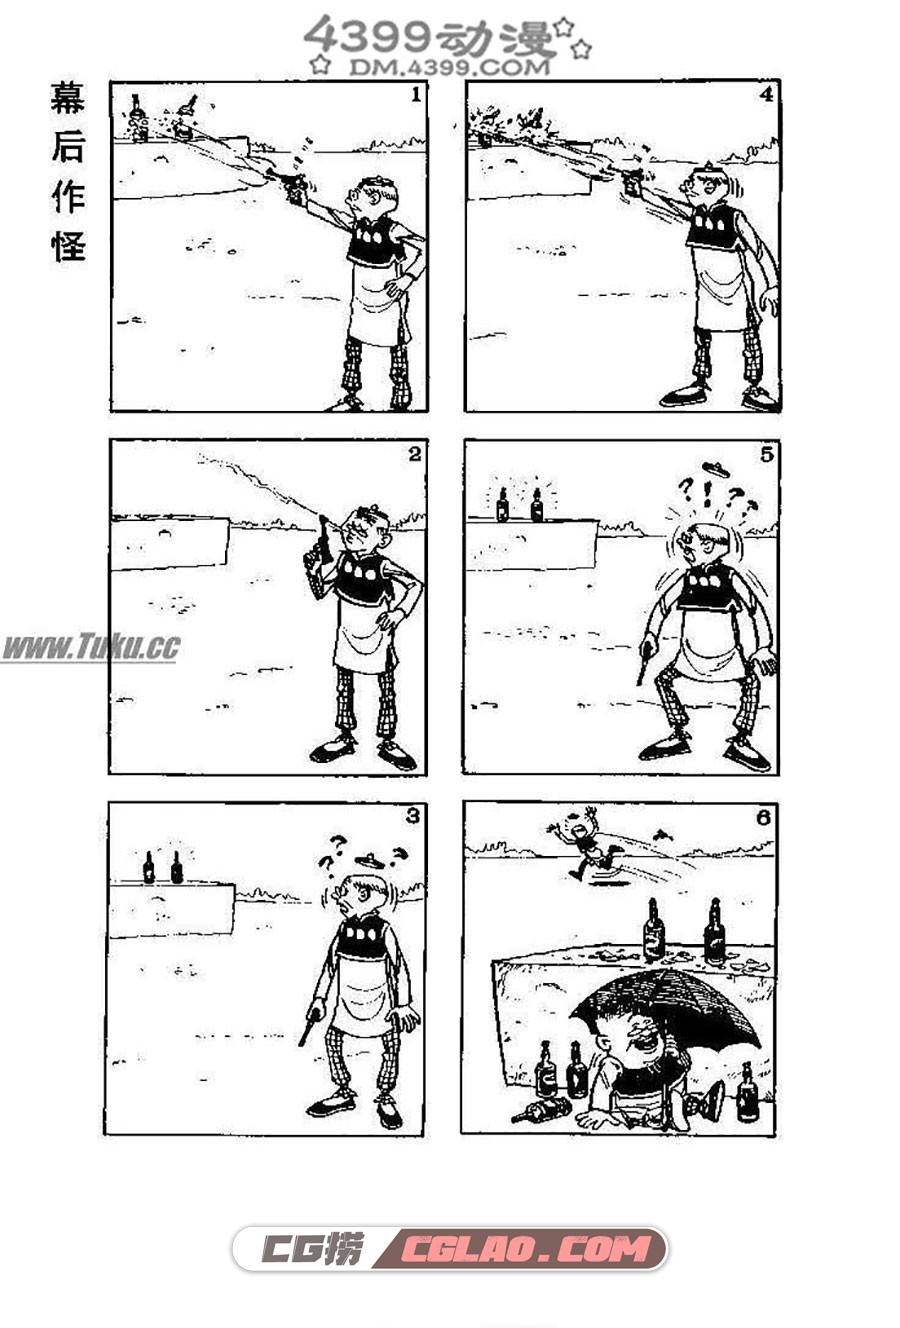 老夫子 王泽 长篇短篇合集 漫画网盘下载,004.jpg